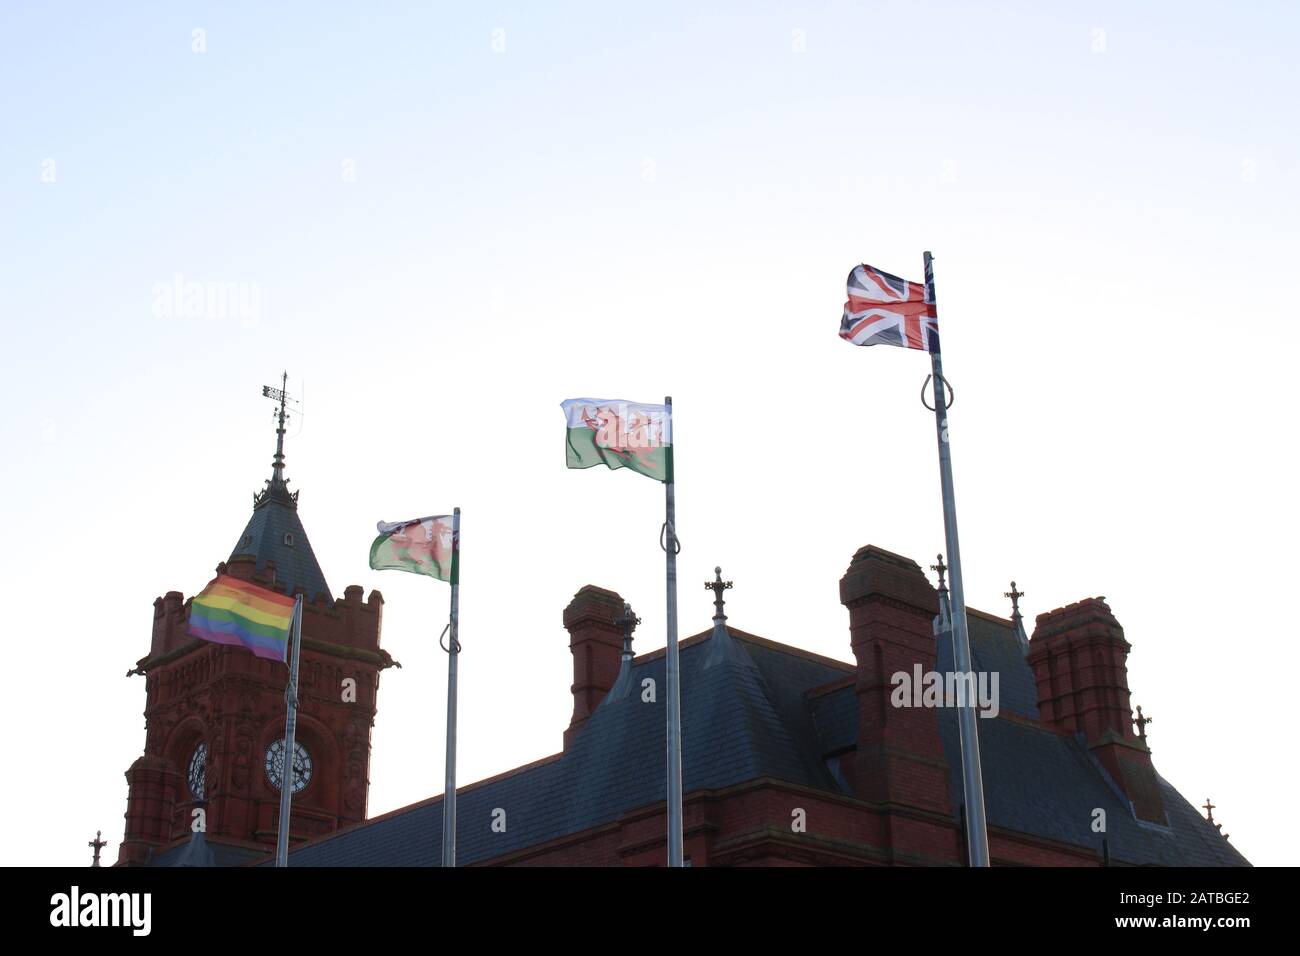 Une photographie des drapeaux à l'extérieur de l'Assemblée nationale du Pays de Galles, de la baie de Cardiff, de Cardiff, au Royaume-Uni, le 1 er février 2020, le lendemain de la sortie de l'UE par le Royaume-Uni. Banque D'Images